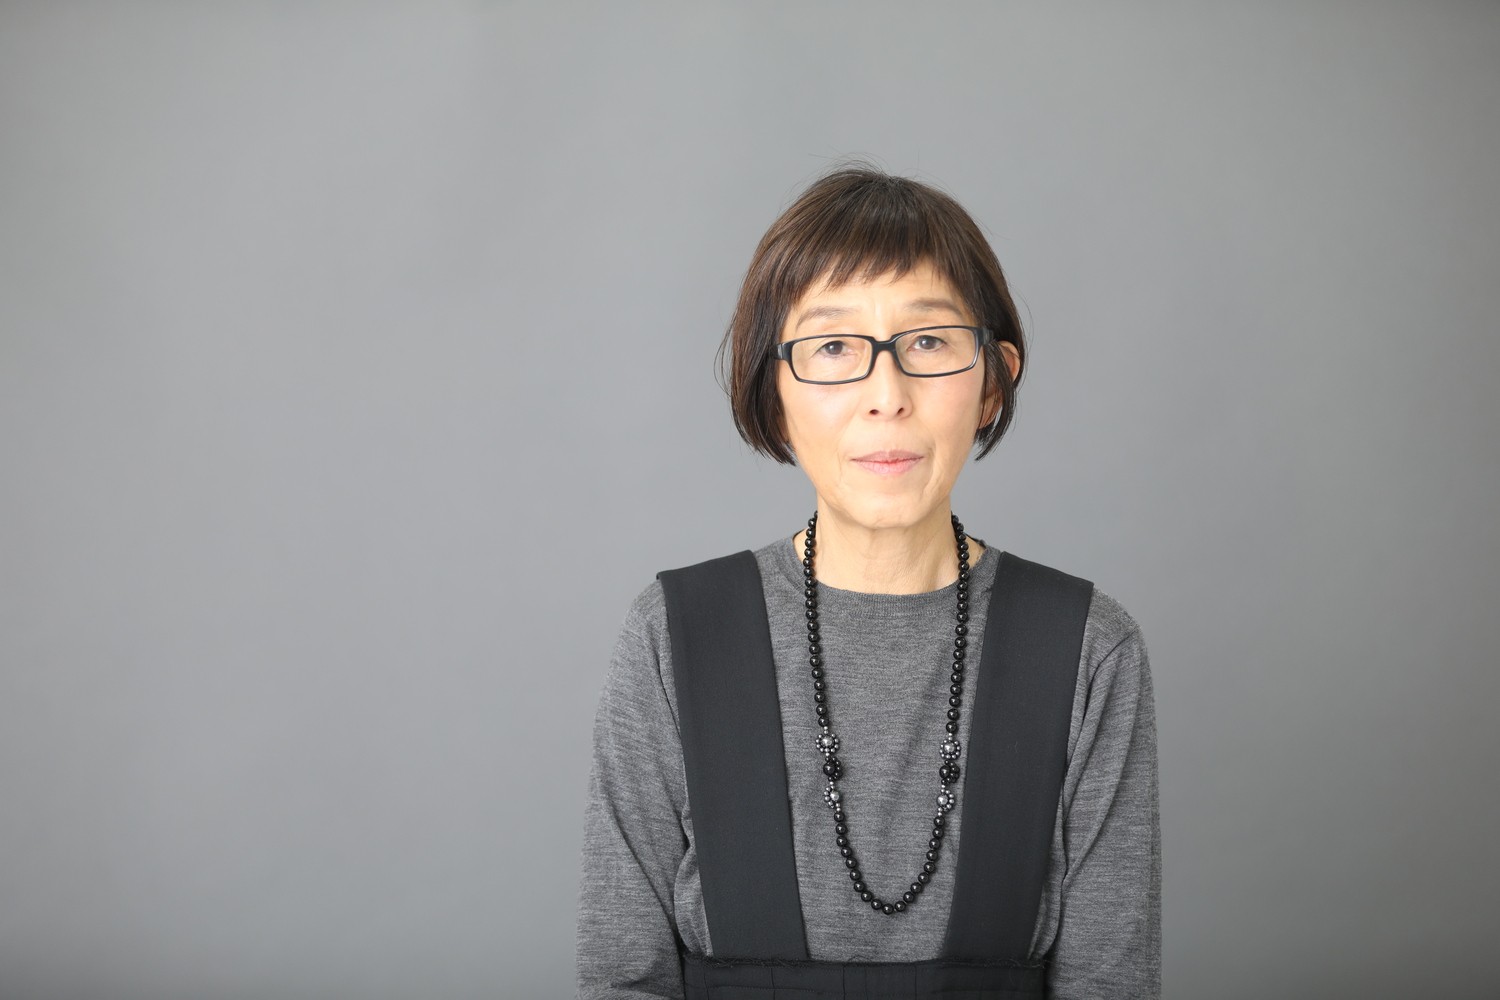 Kazuyo Sejima, a nova presidente do júri internacional da Bienal de Veneza (Foto: Divulgação)